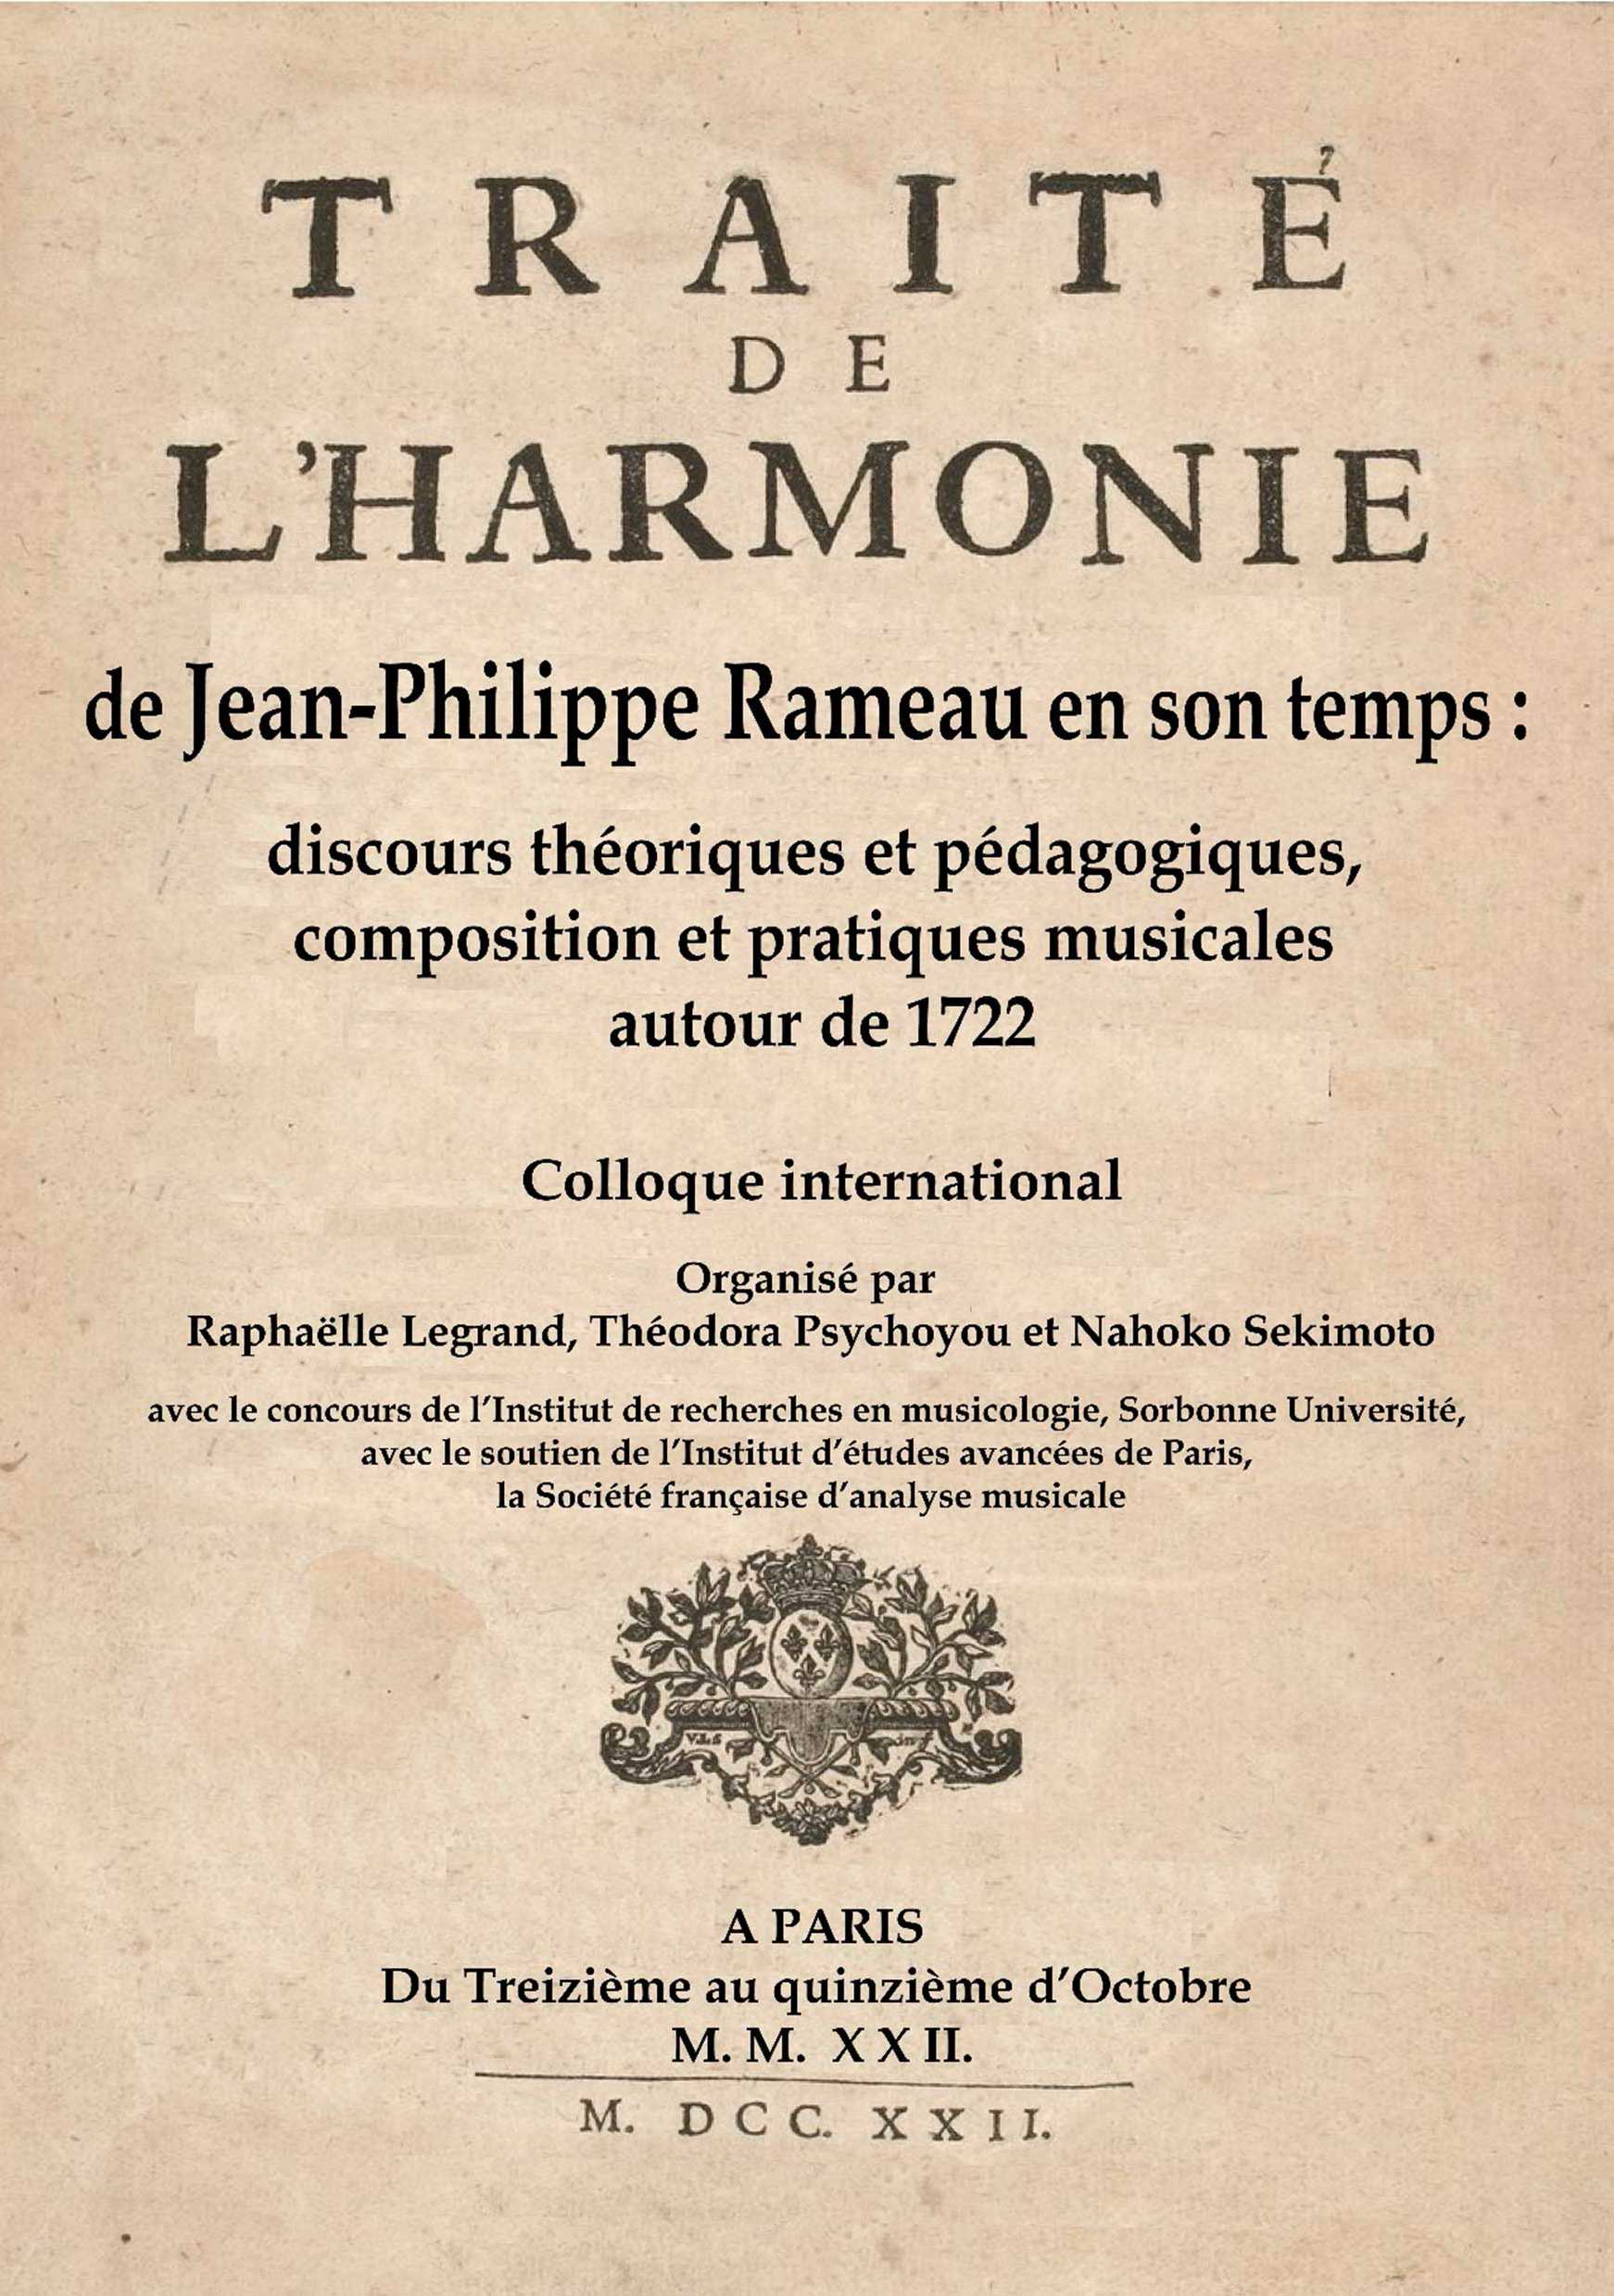 You are currently viewing Le Traité de l’harmonie de Jean-Philippe Rameau en son temps : discours théoriques et pédagogiques, composition et pratiques musicales autour de 1722